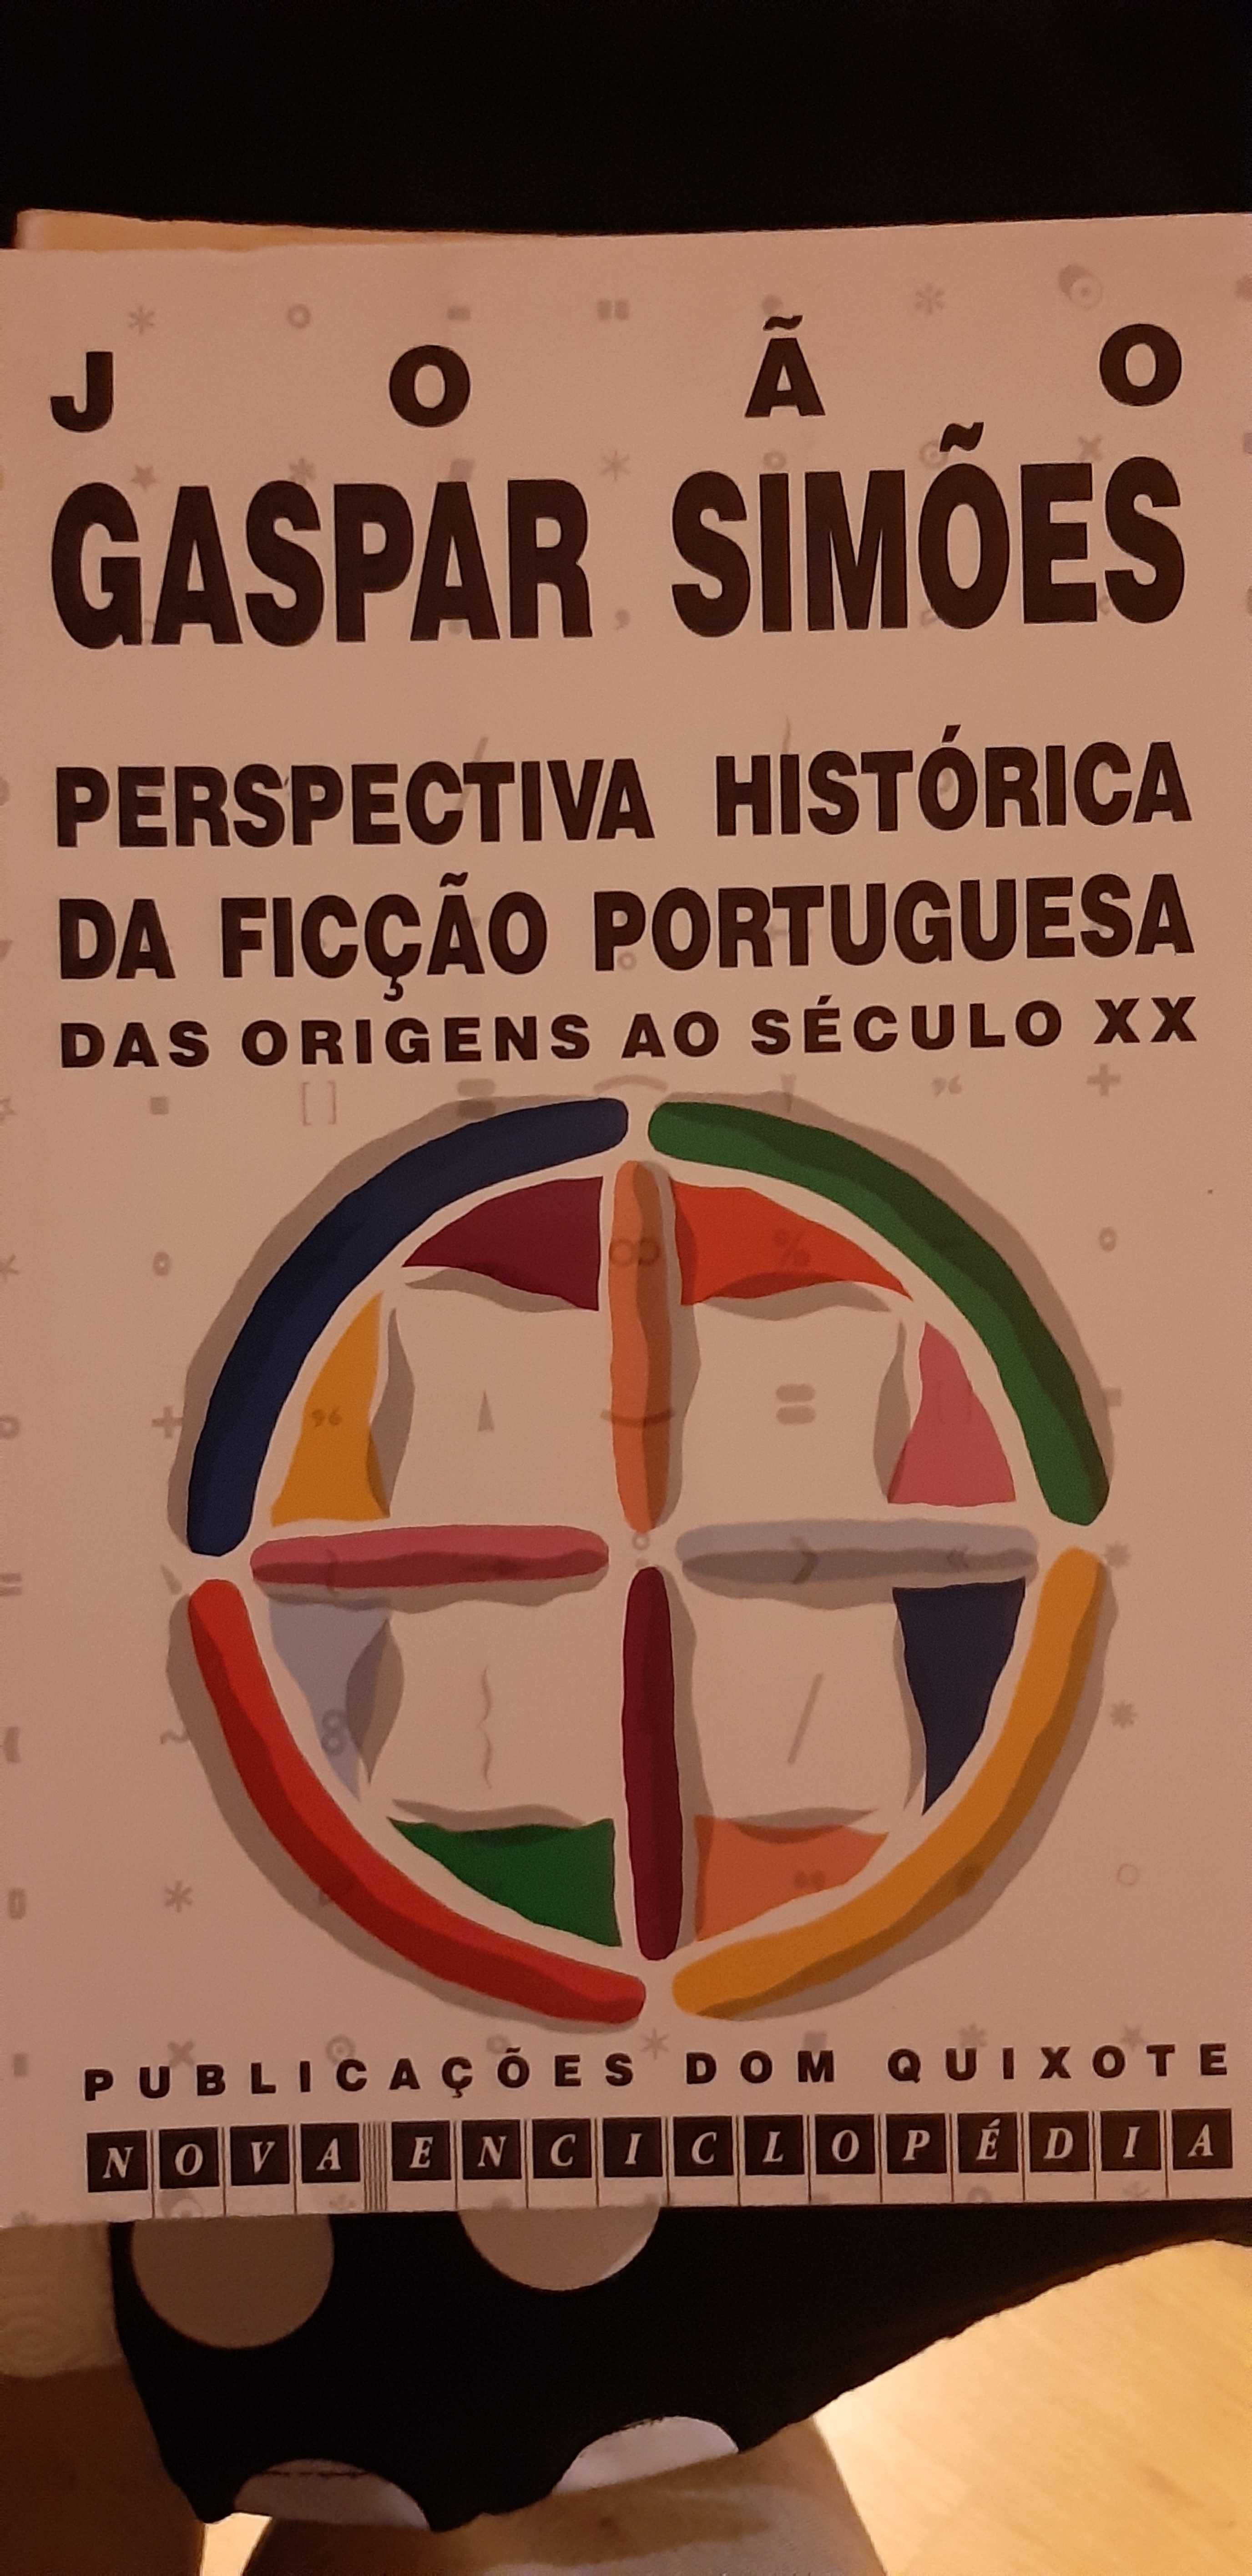 Perspectiva Histórica da Ficção Portuguesa, João Gaspar Simões